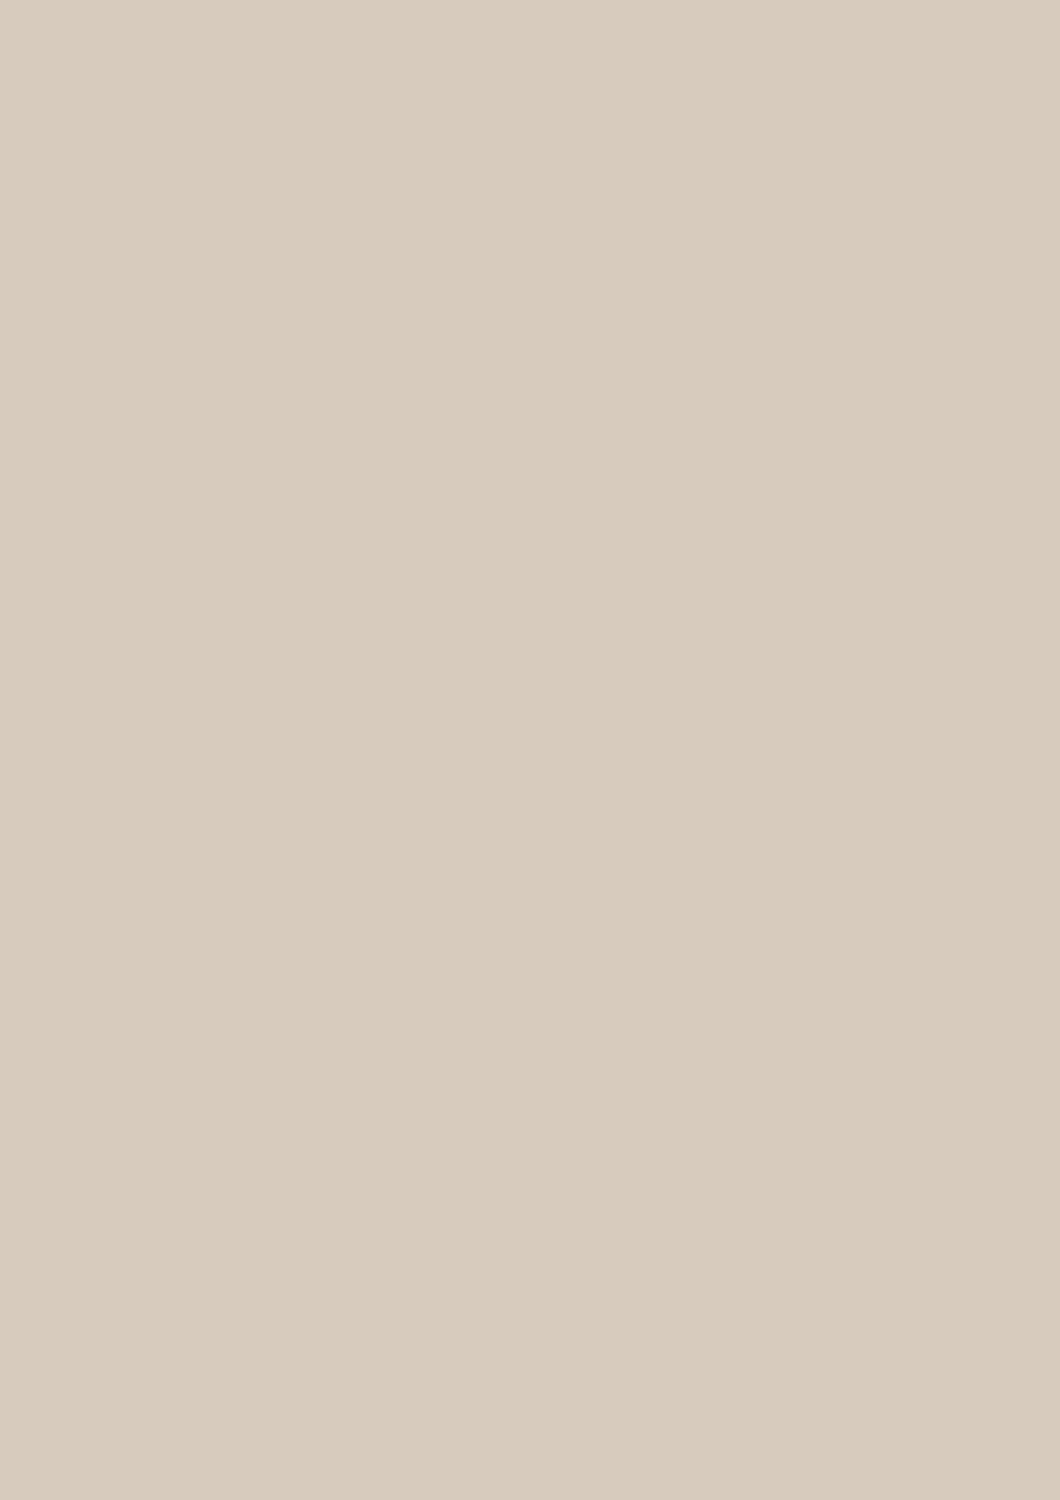 БСП  Кашемир серый ST9, 2800*1310*0,8мм